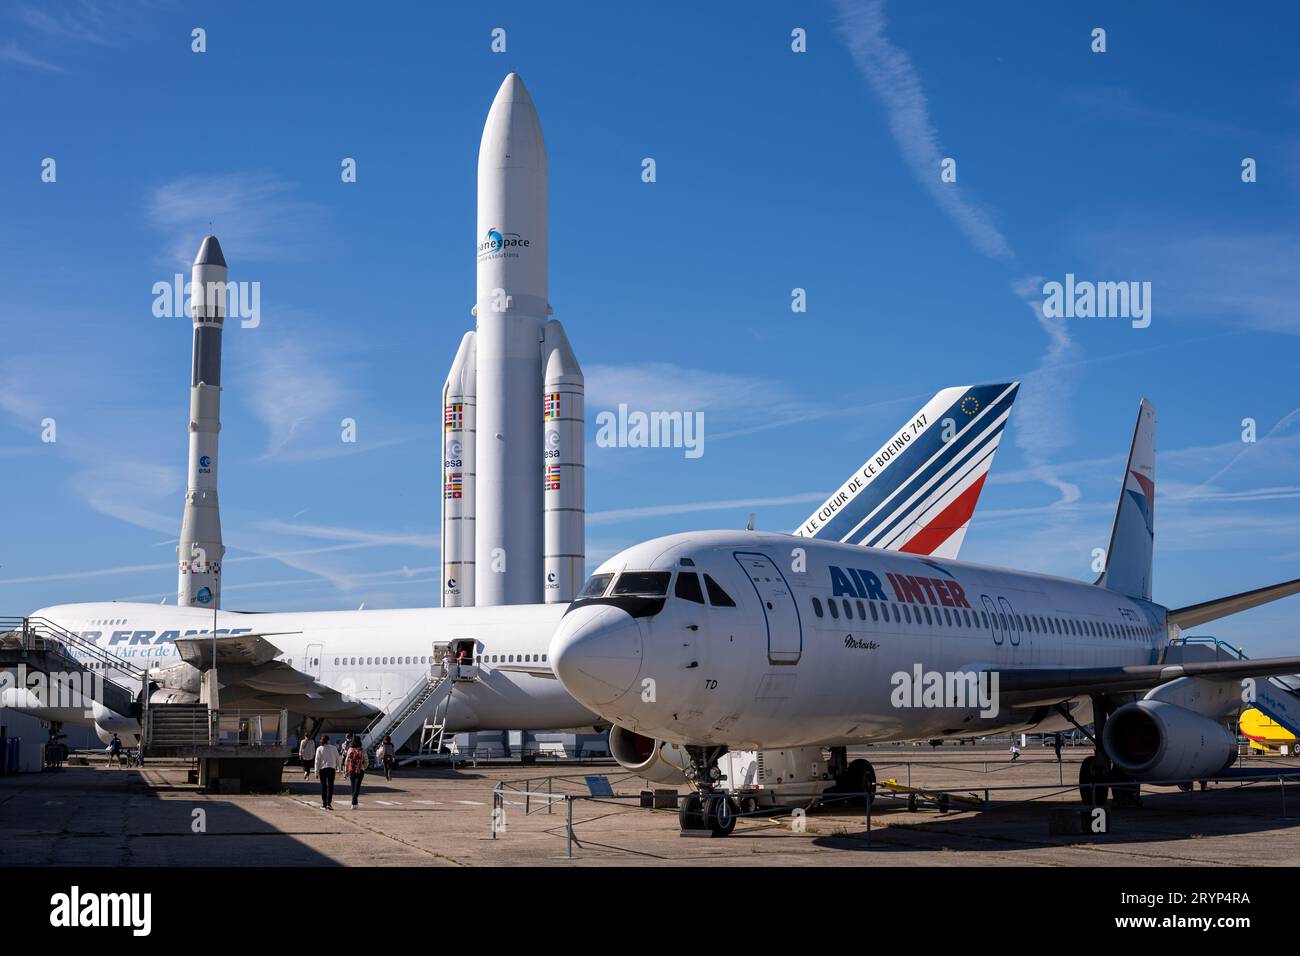 Aerei e modelli di razzi europei Ariane 5 e Ariane 1 esposti sulla pista del Museo francese dell'aria e dello spazio all'aeroporto di le Bourget. Foto Stock